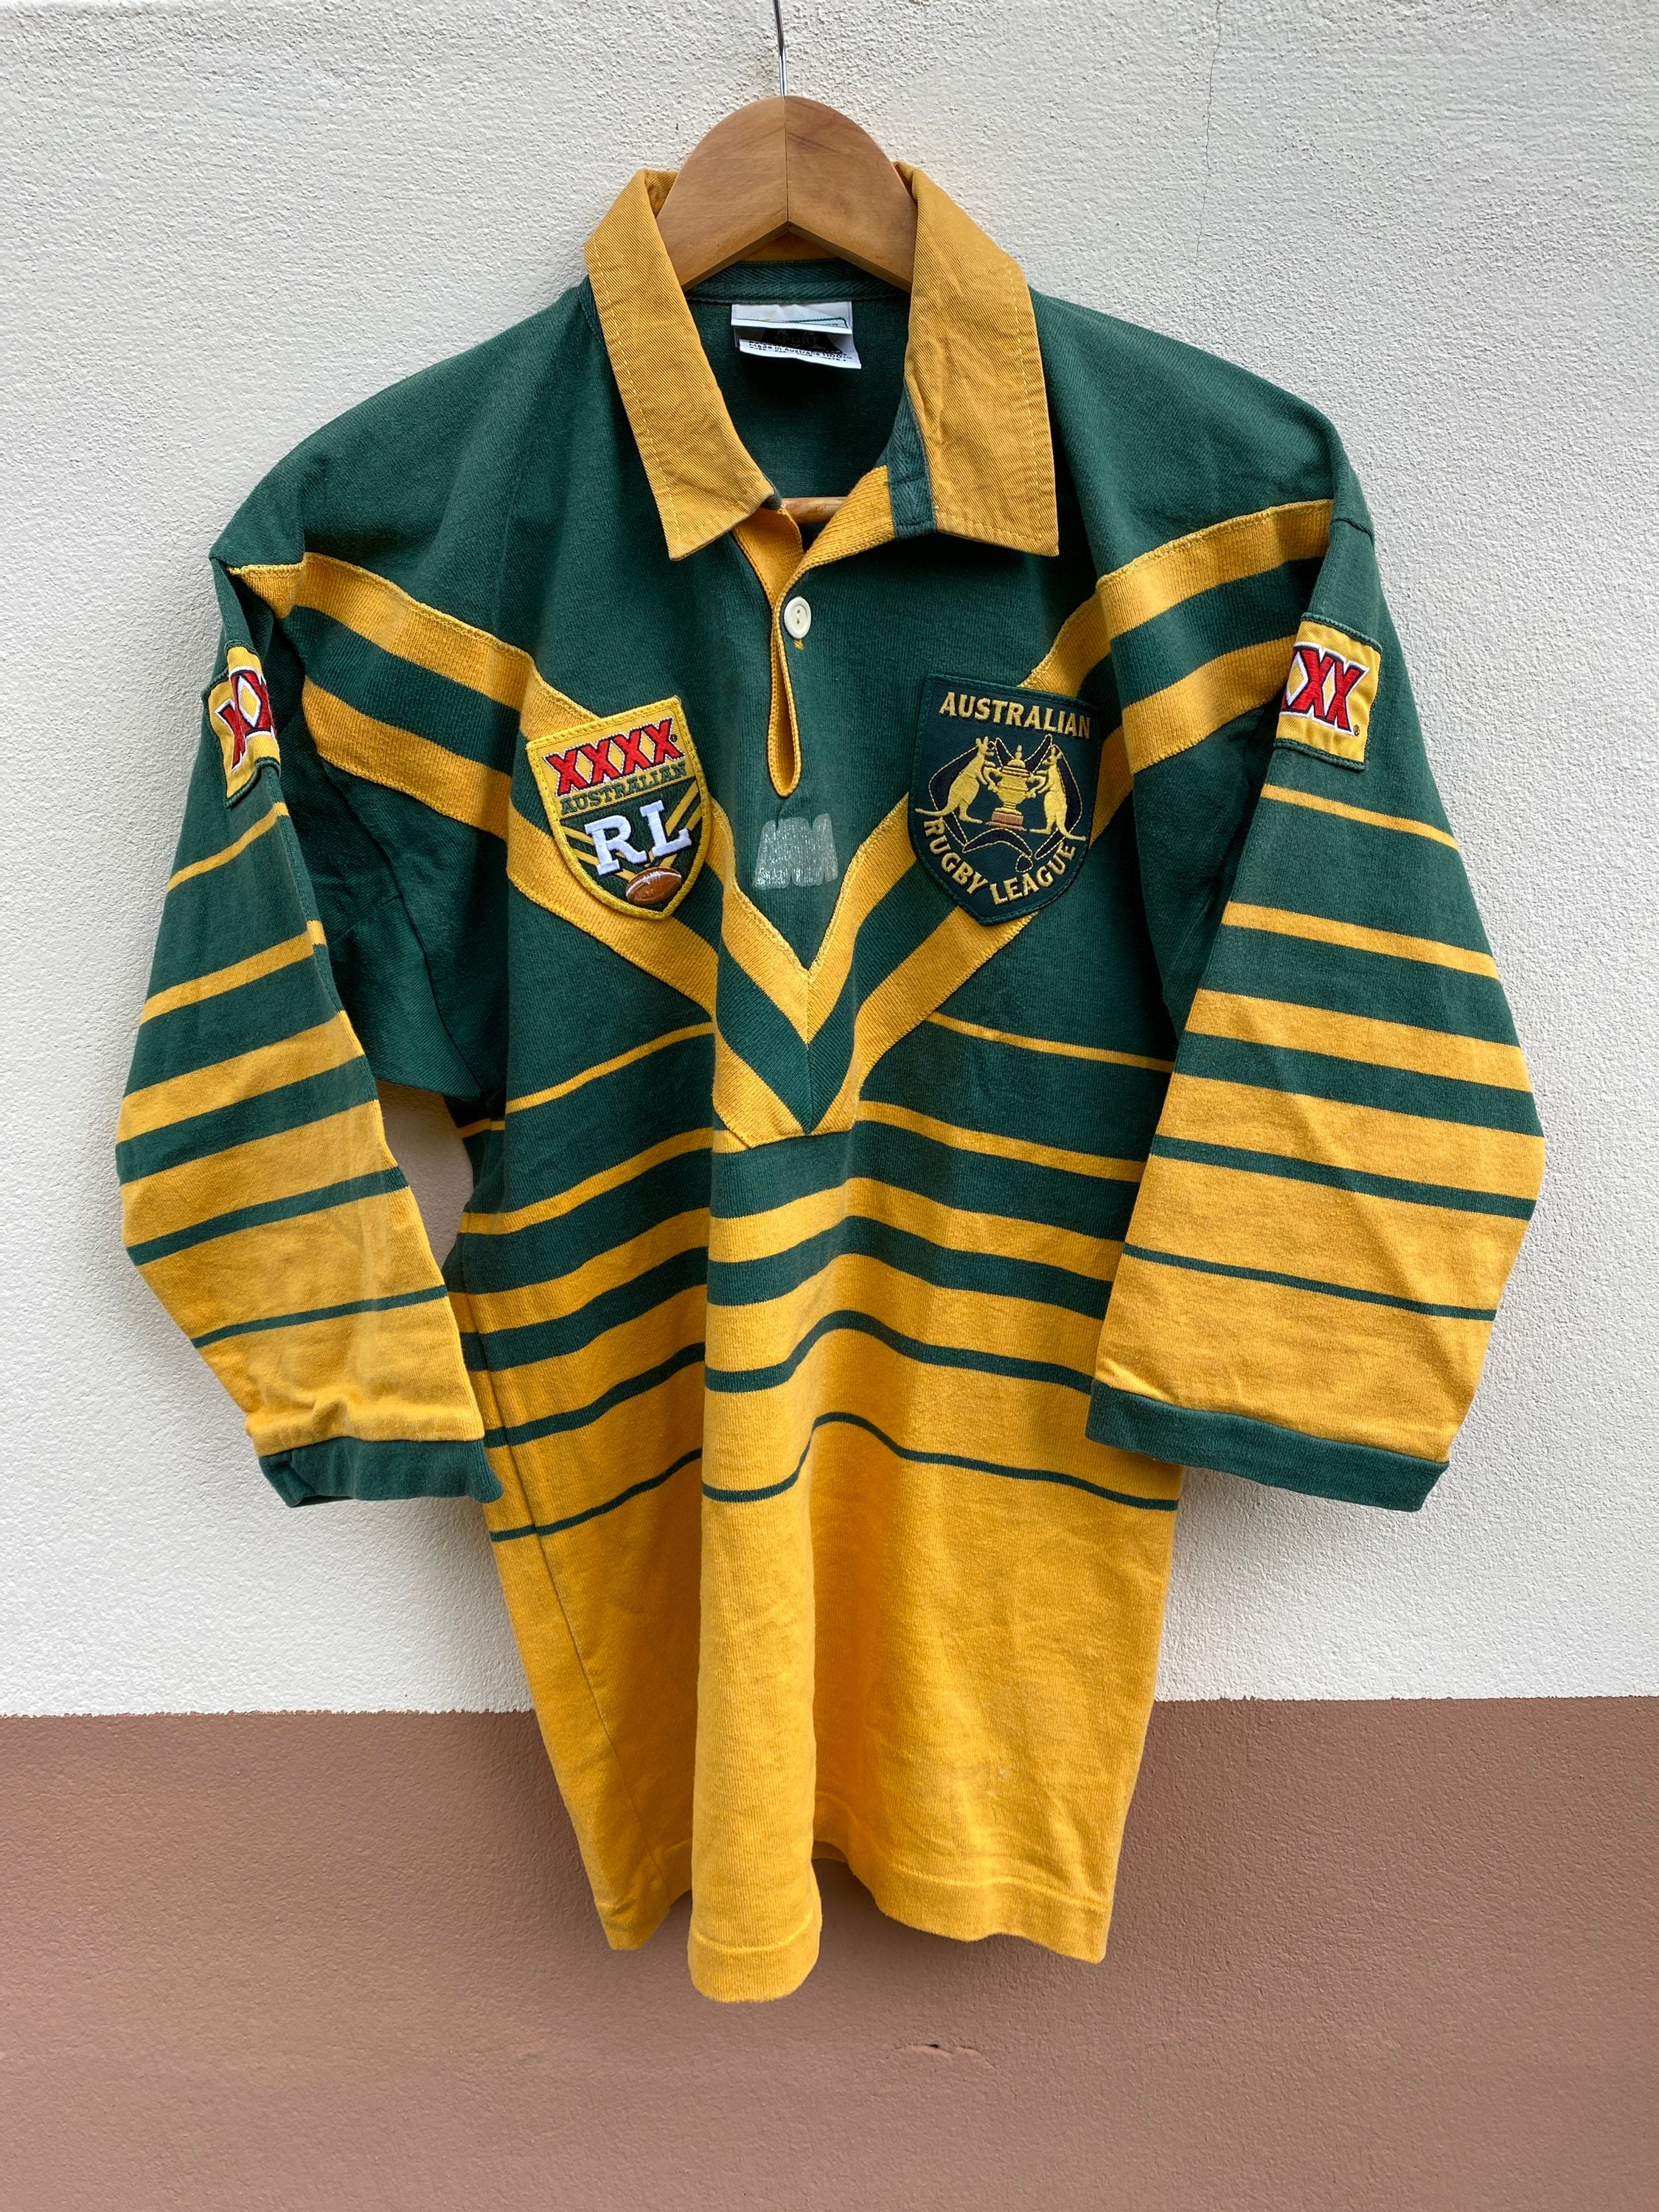 australian league jersey